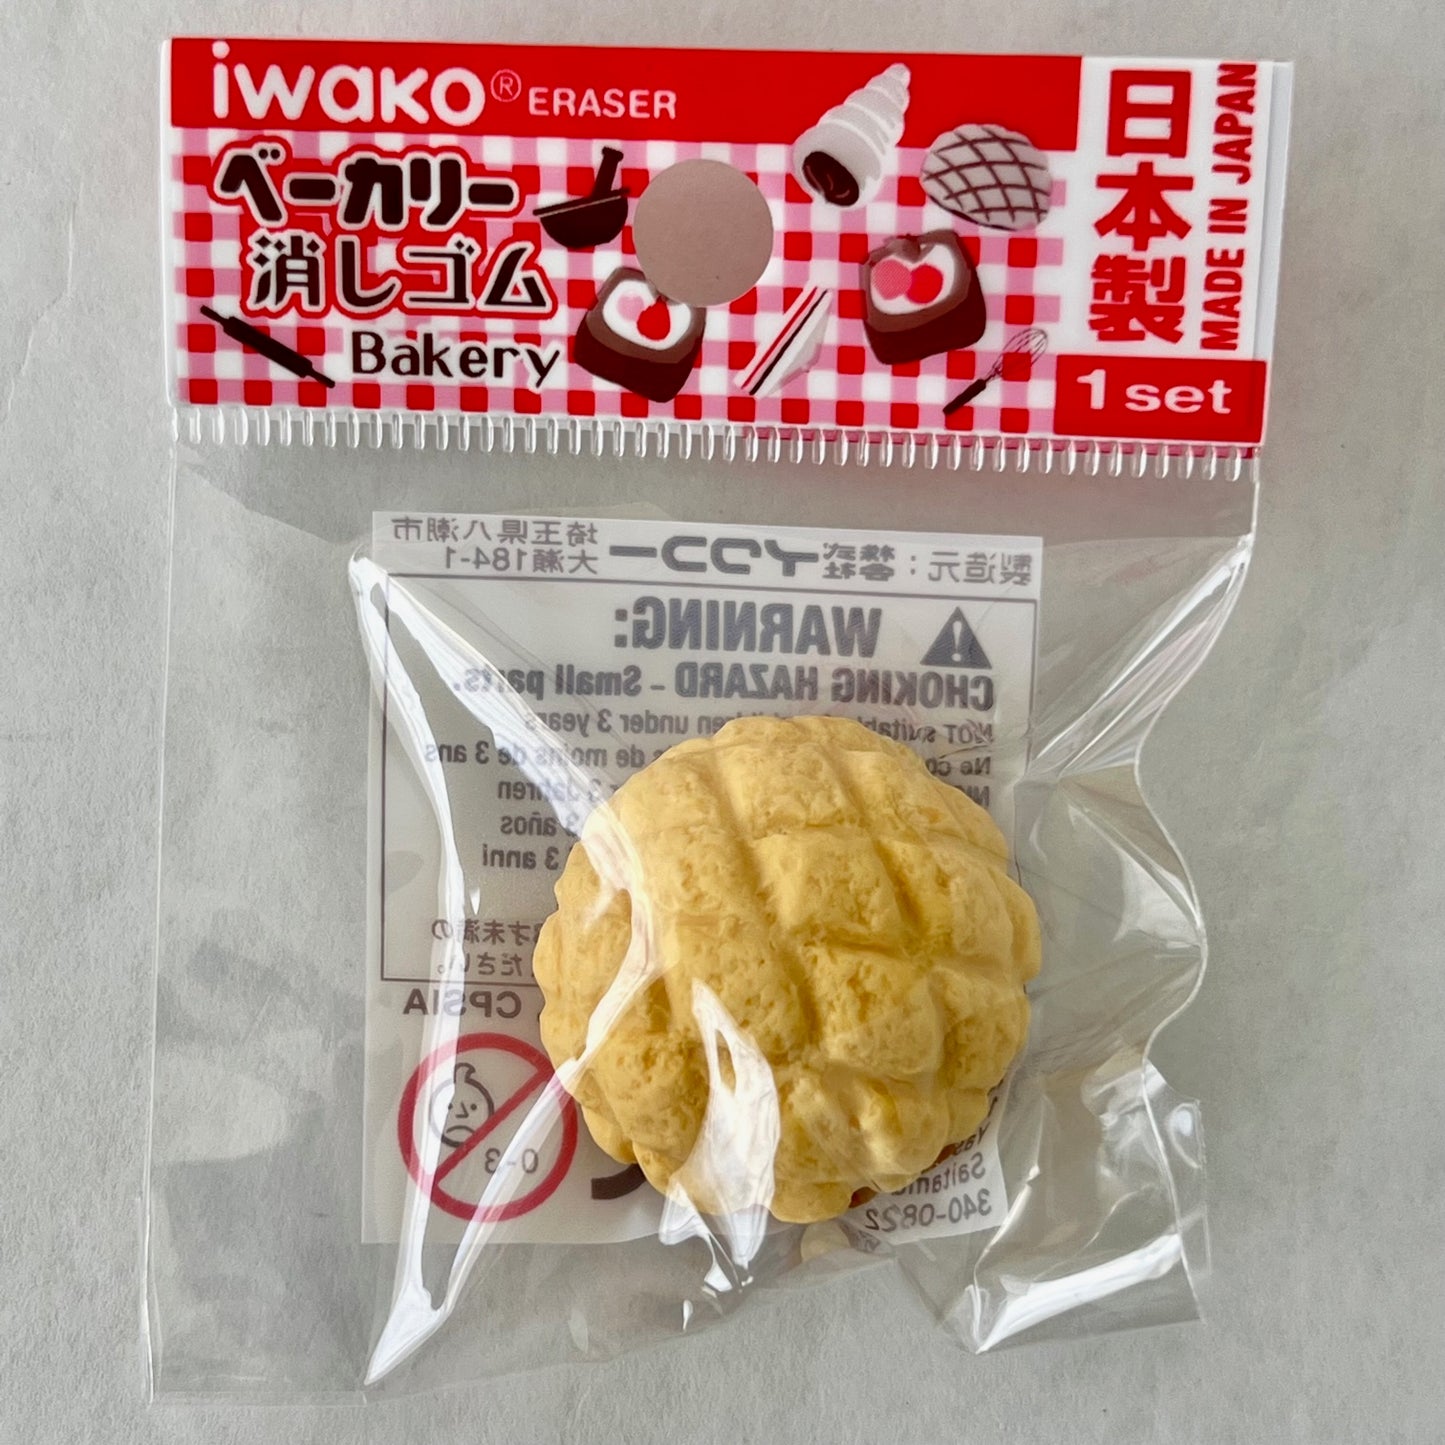 38272 IWAKO CAFE BAKERY ERASERS-60